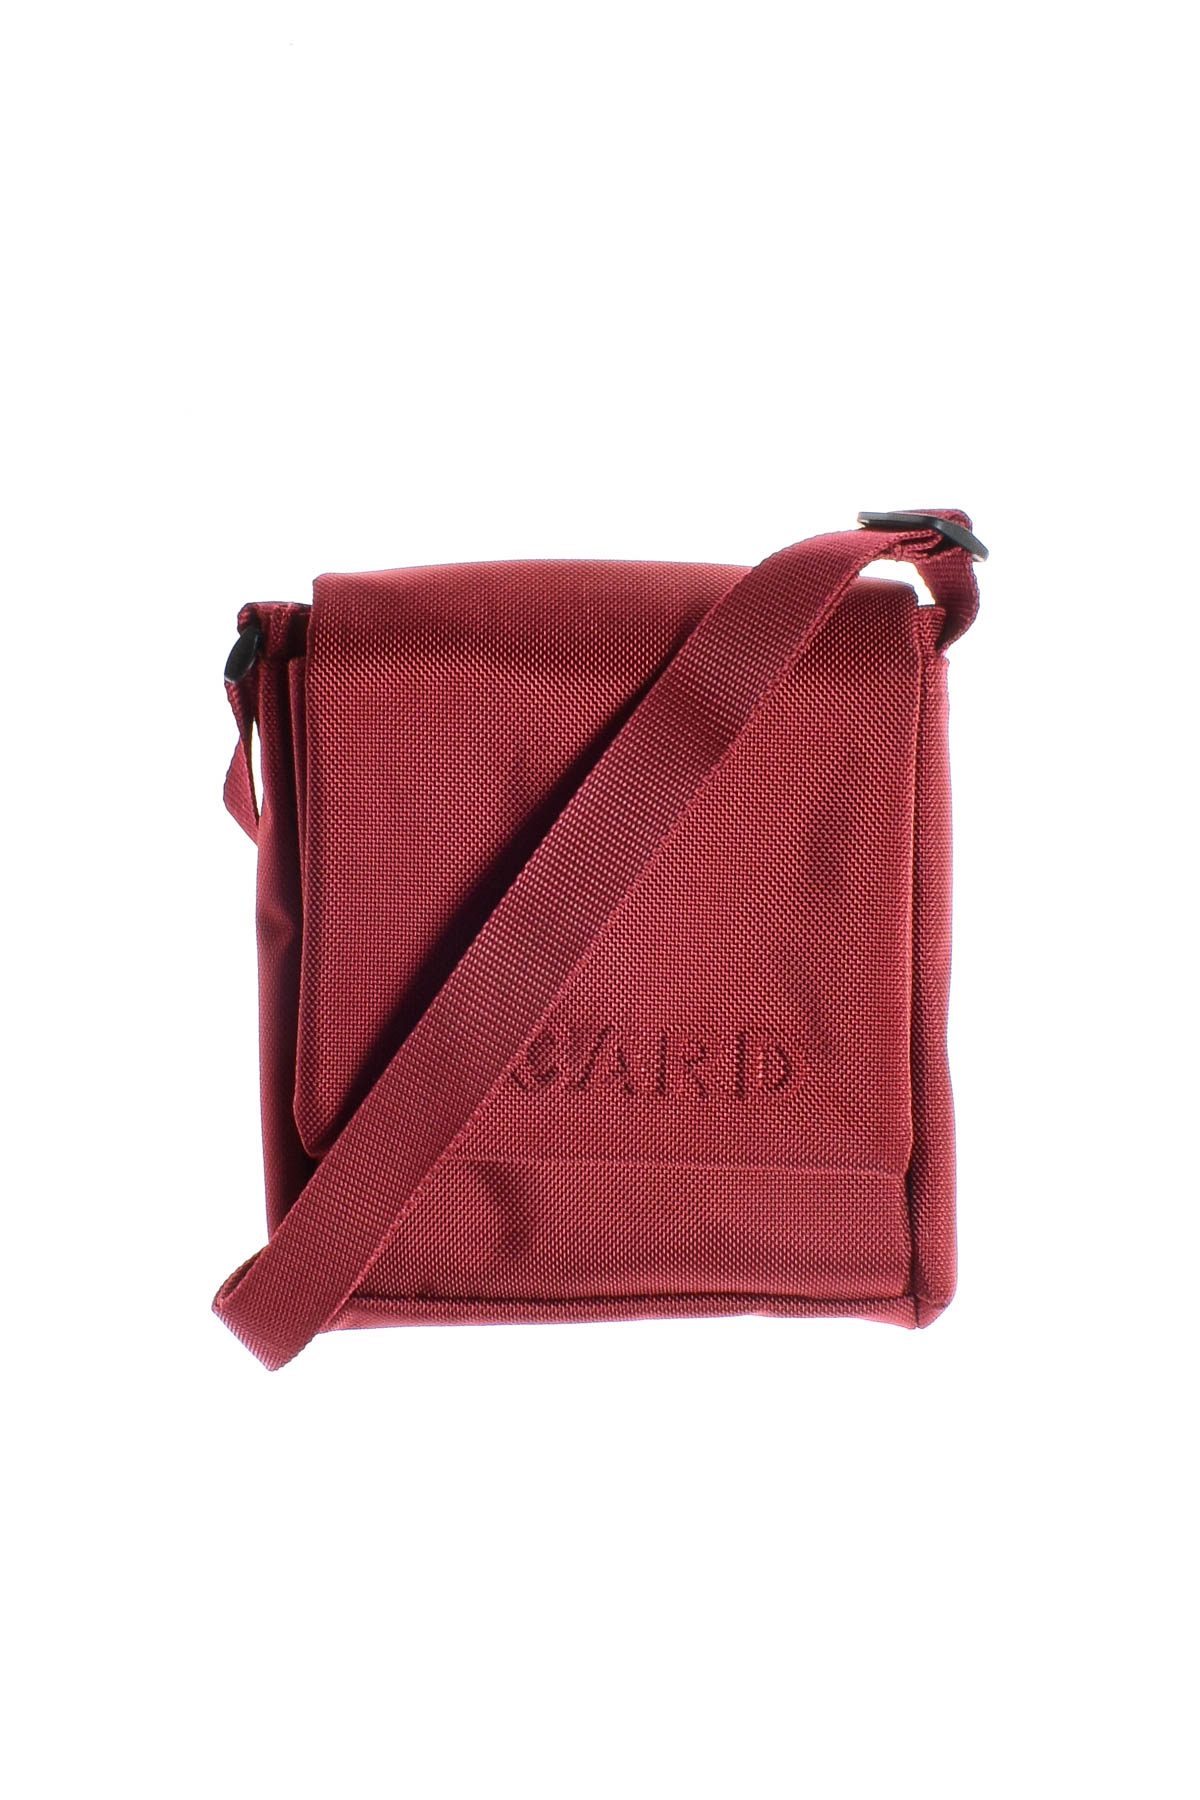 Τσάντα - PICARD - 0